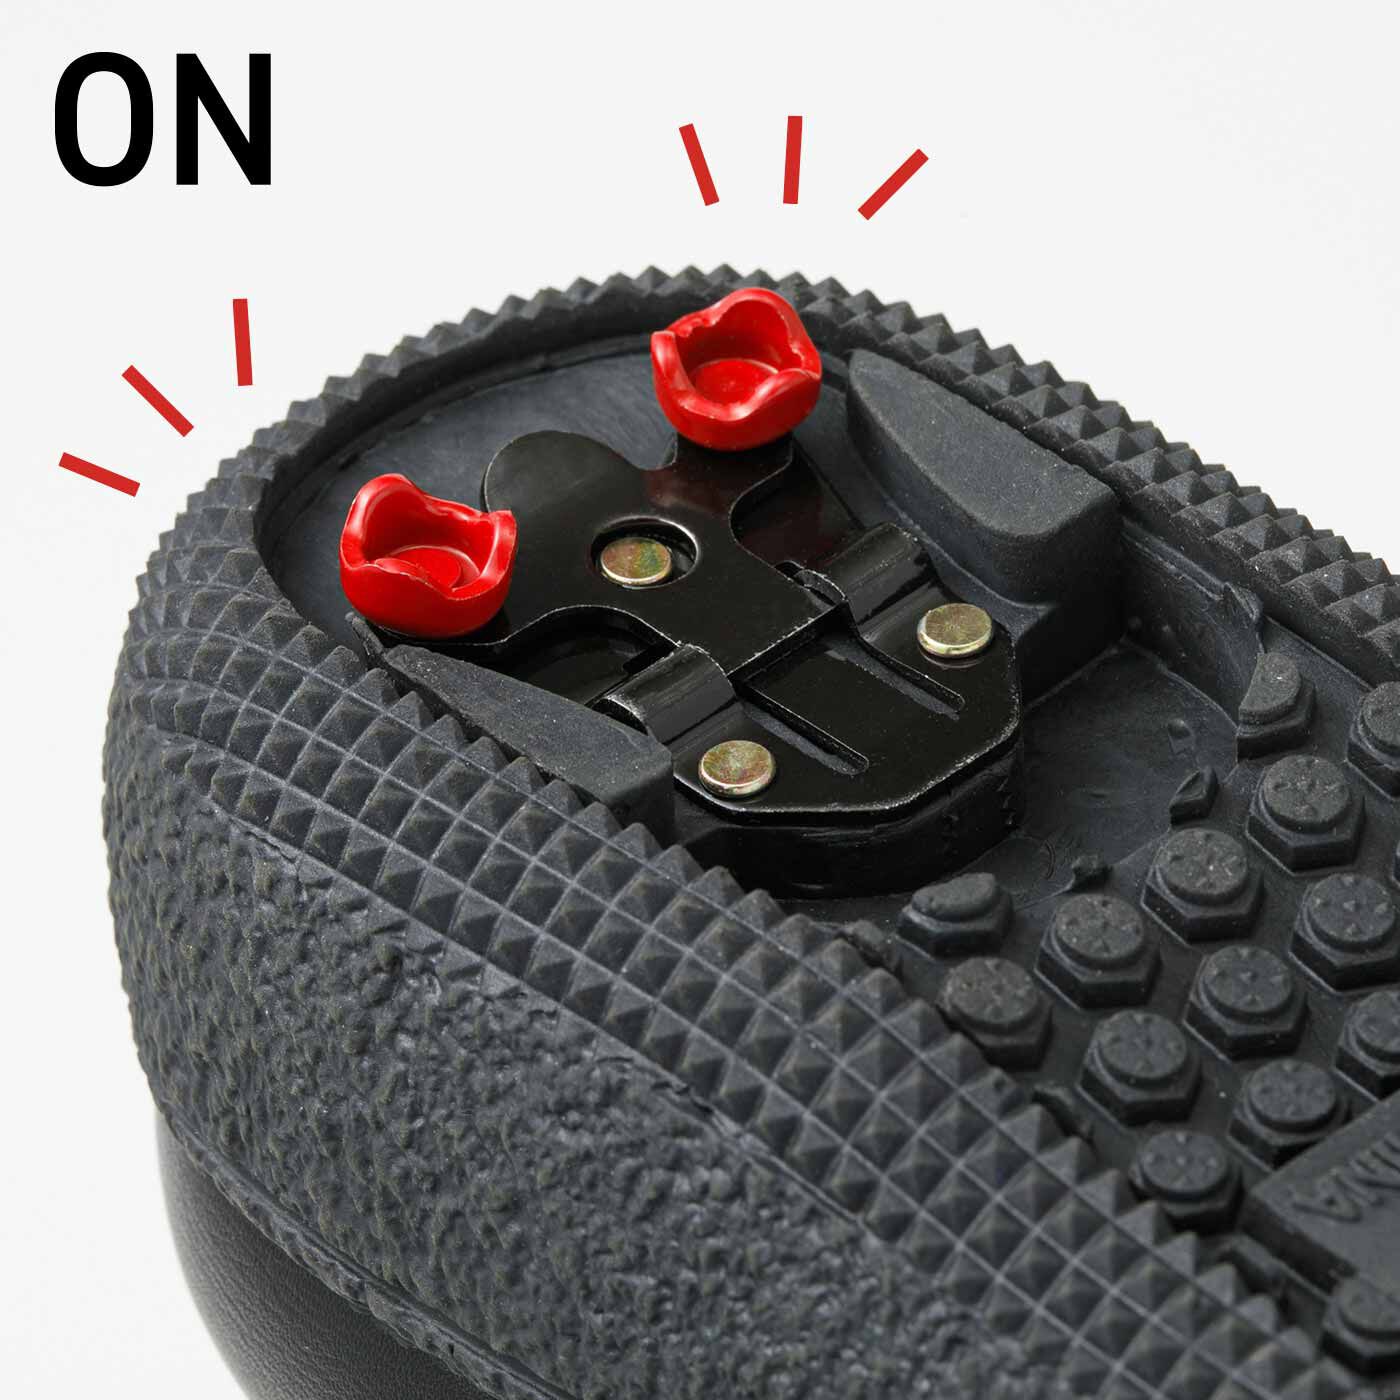 L'AMIPLUS|ラミプリュス　北海道の靴屋さん発 スパイクが出てくる 防水仕様ブーツ〈ブラック〉|折りたたみ式のスパイクはON/OFFの切り替え自在｡ONにすれば､2点で支える金属製のスパイクが出てきます。